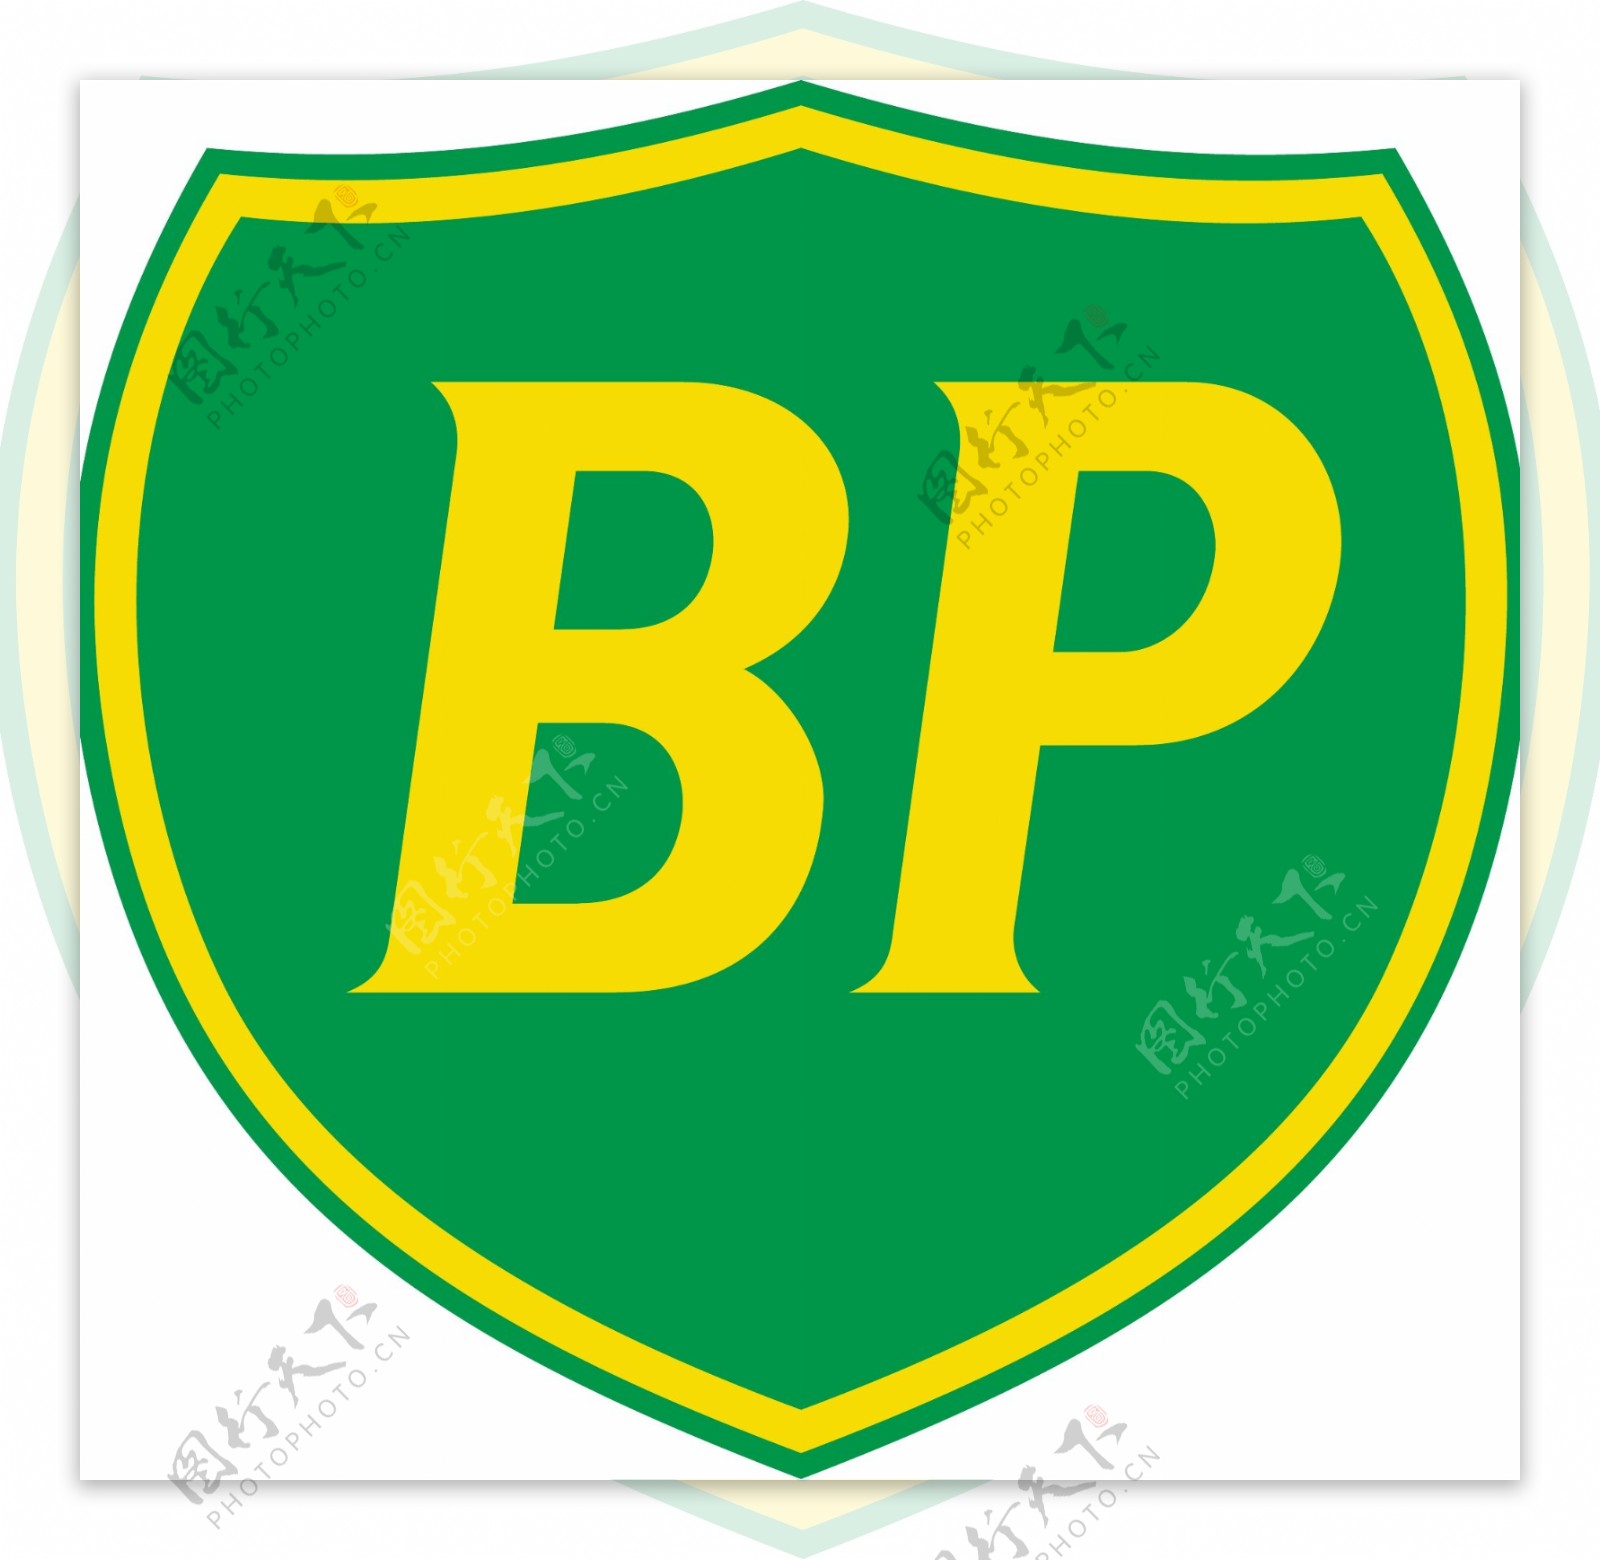 BP1